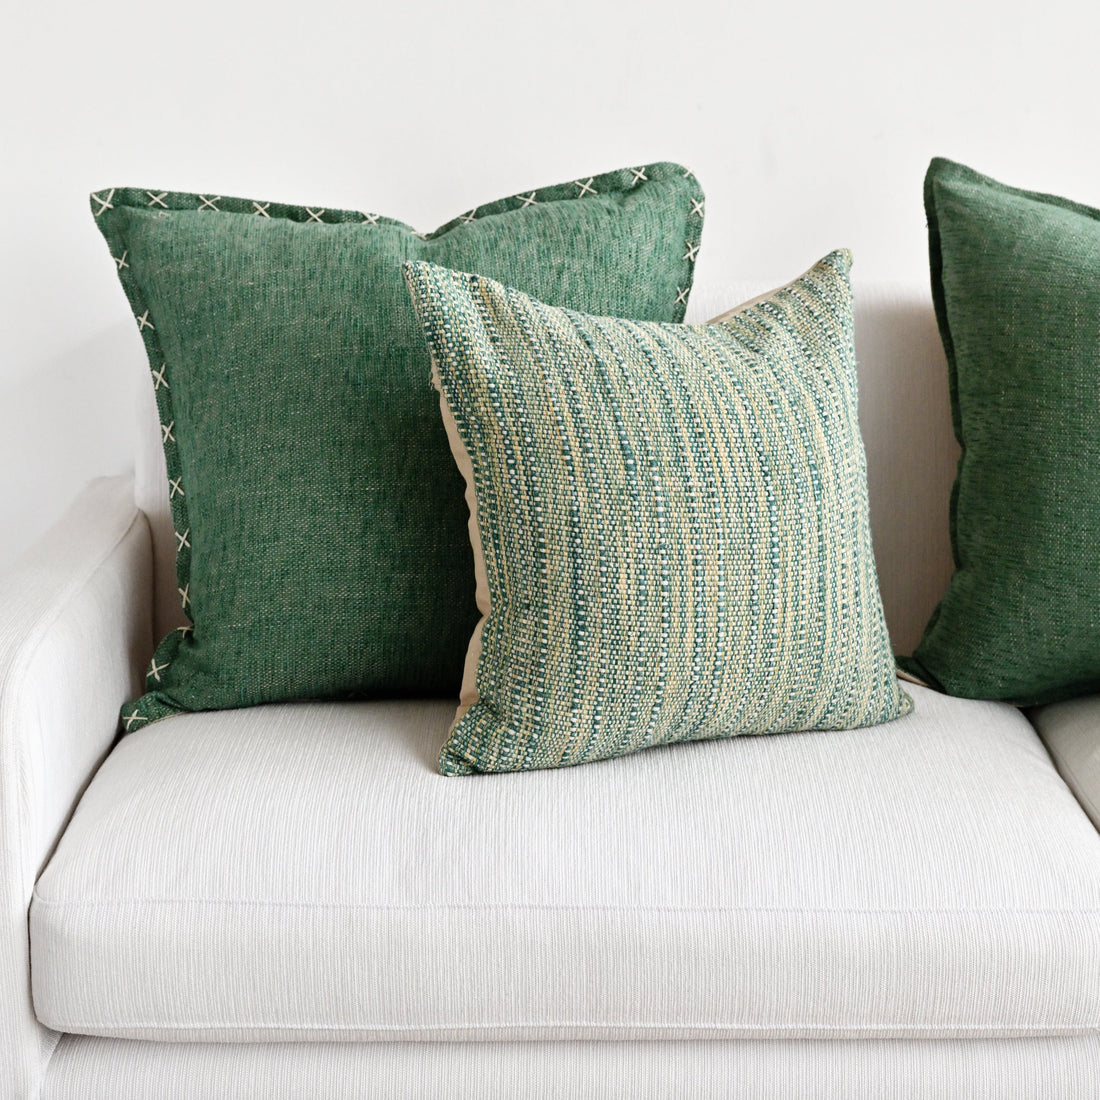 Anaisha Green Cushion Cover - 55cm x 55cm